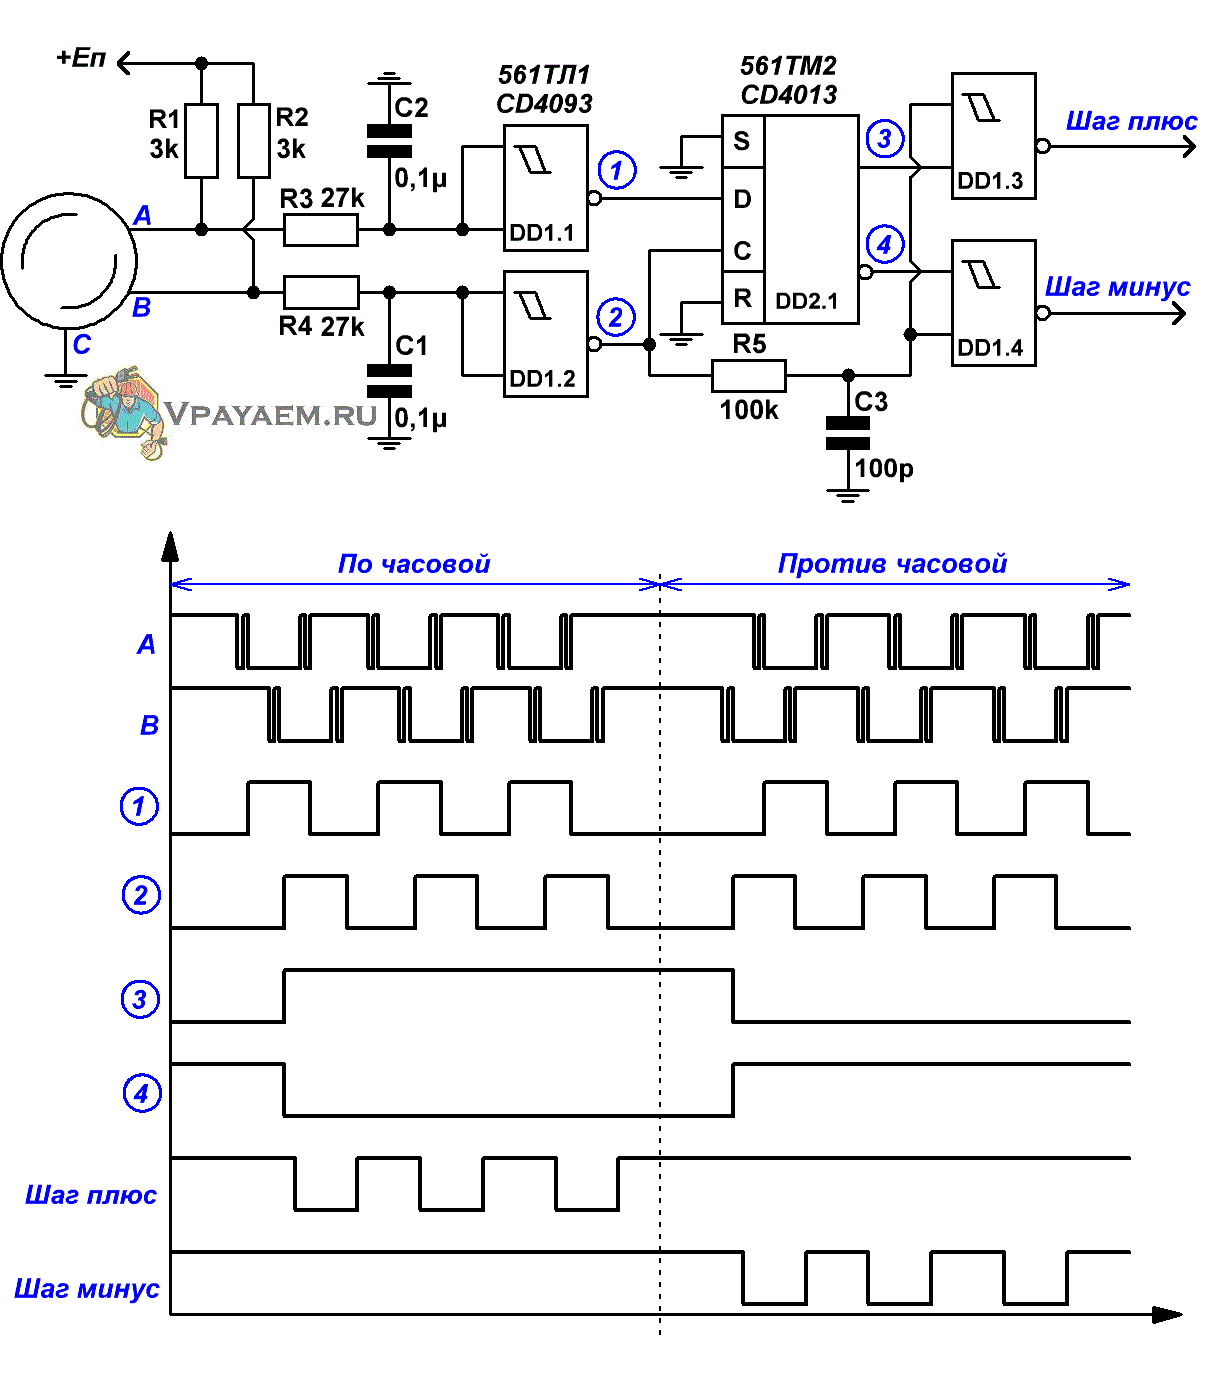 Схема обработки сигналов энкодера с подавлением дребезга и указанием счётных импульсов 